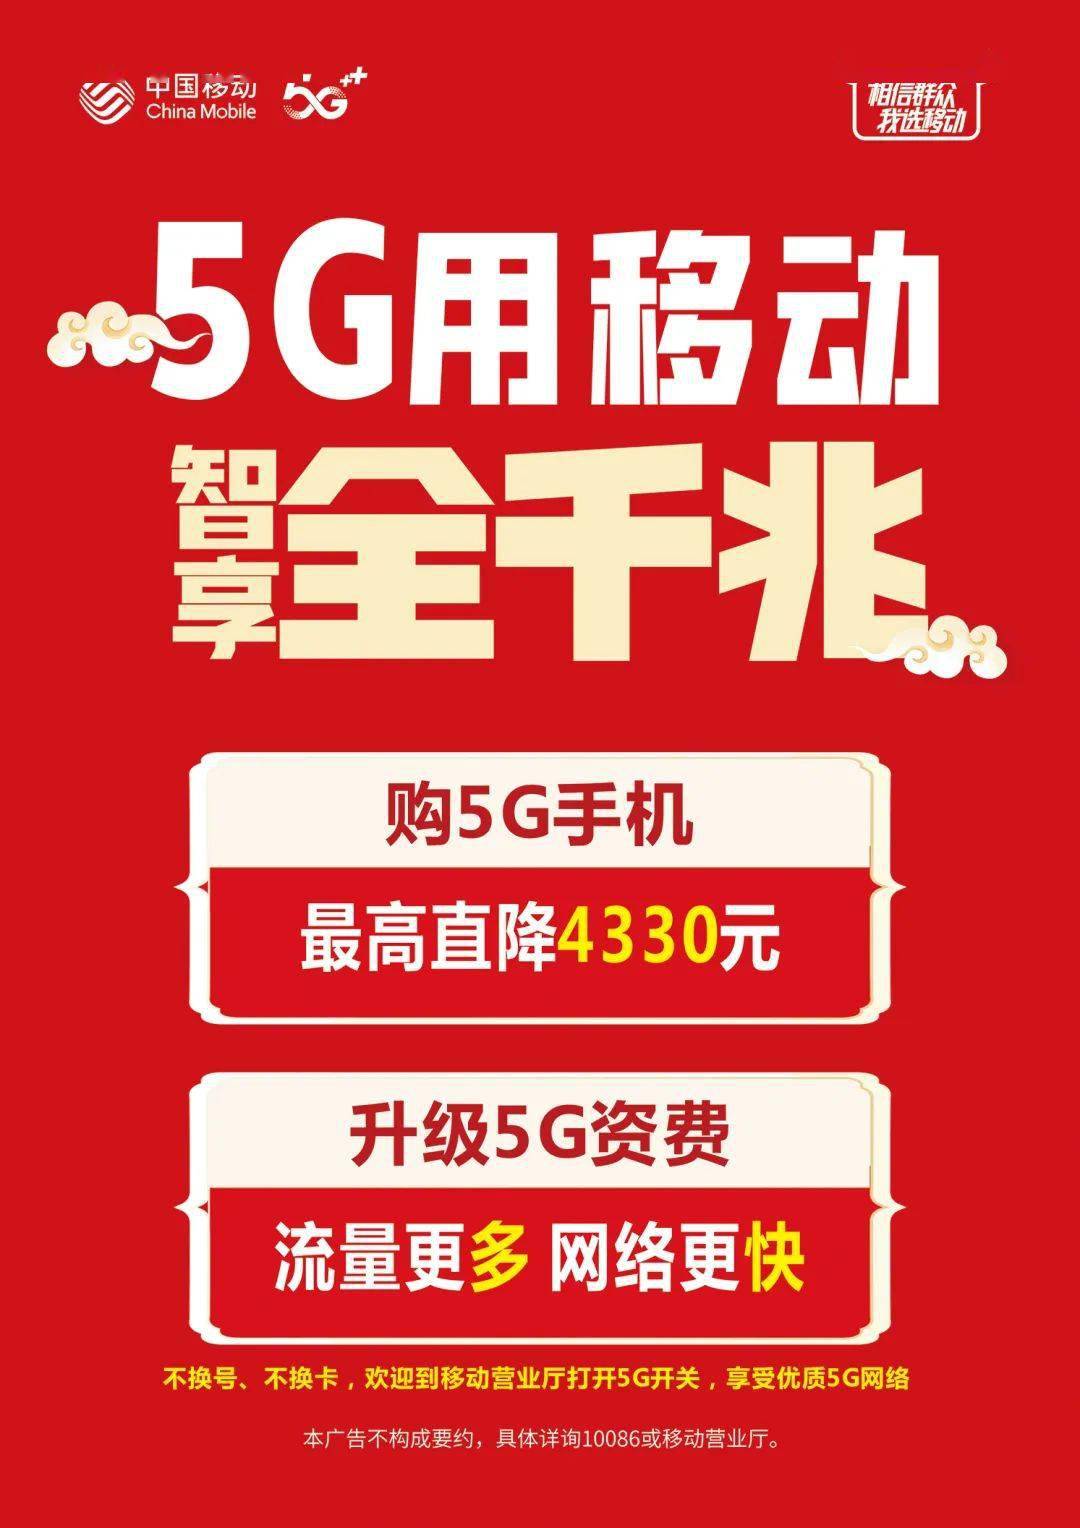 5G网络革新生活方式 传统宽带面临挑战  第8张